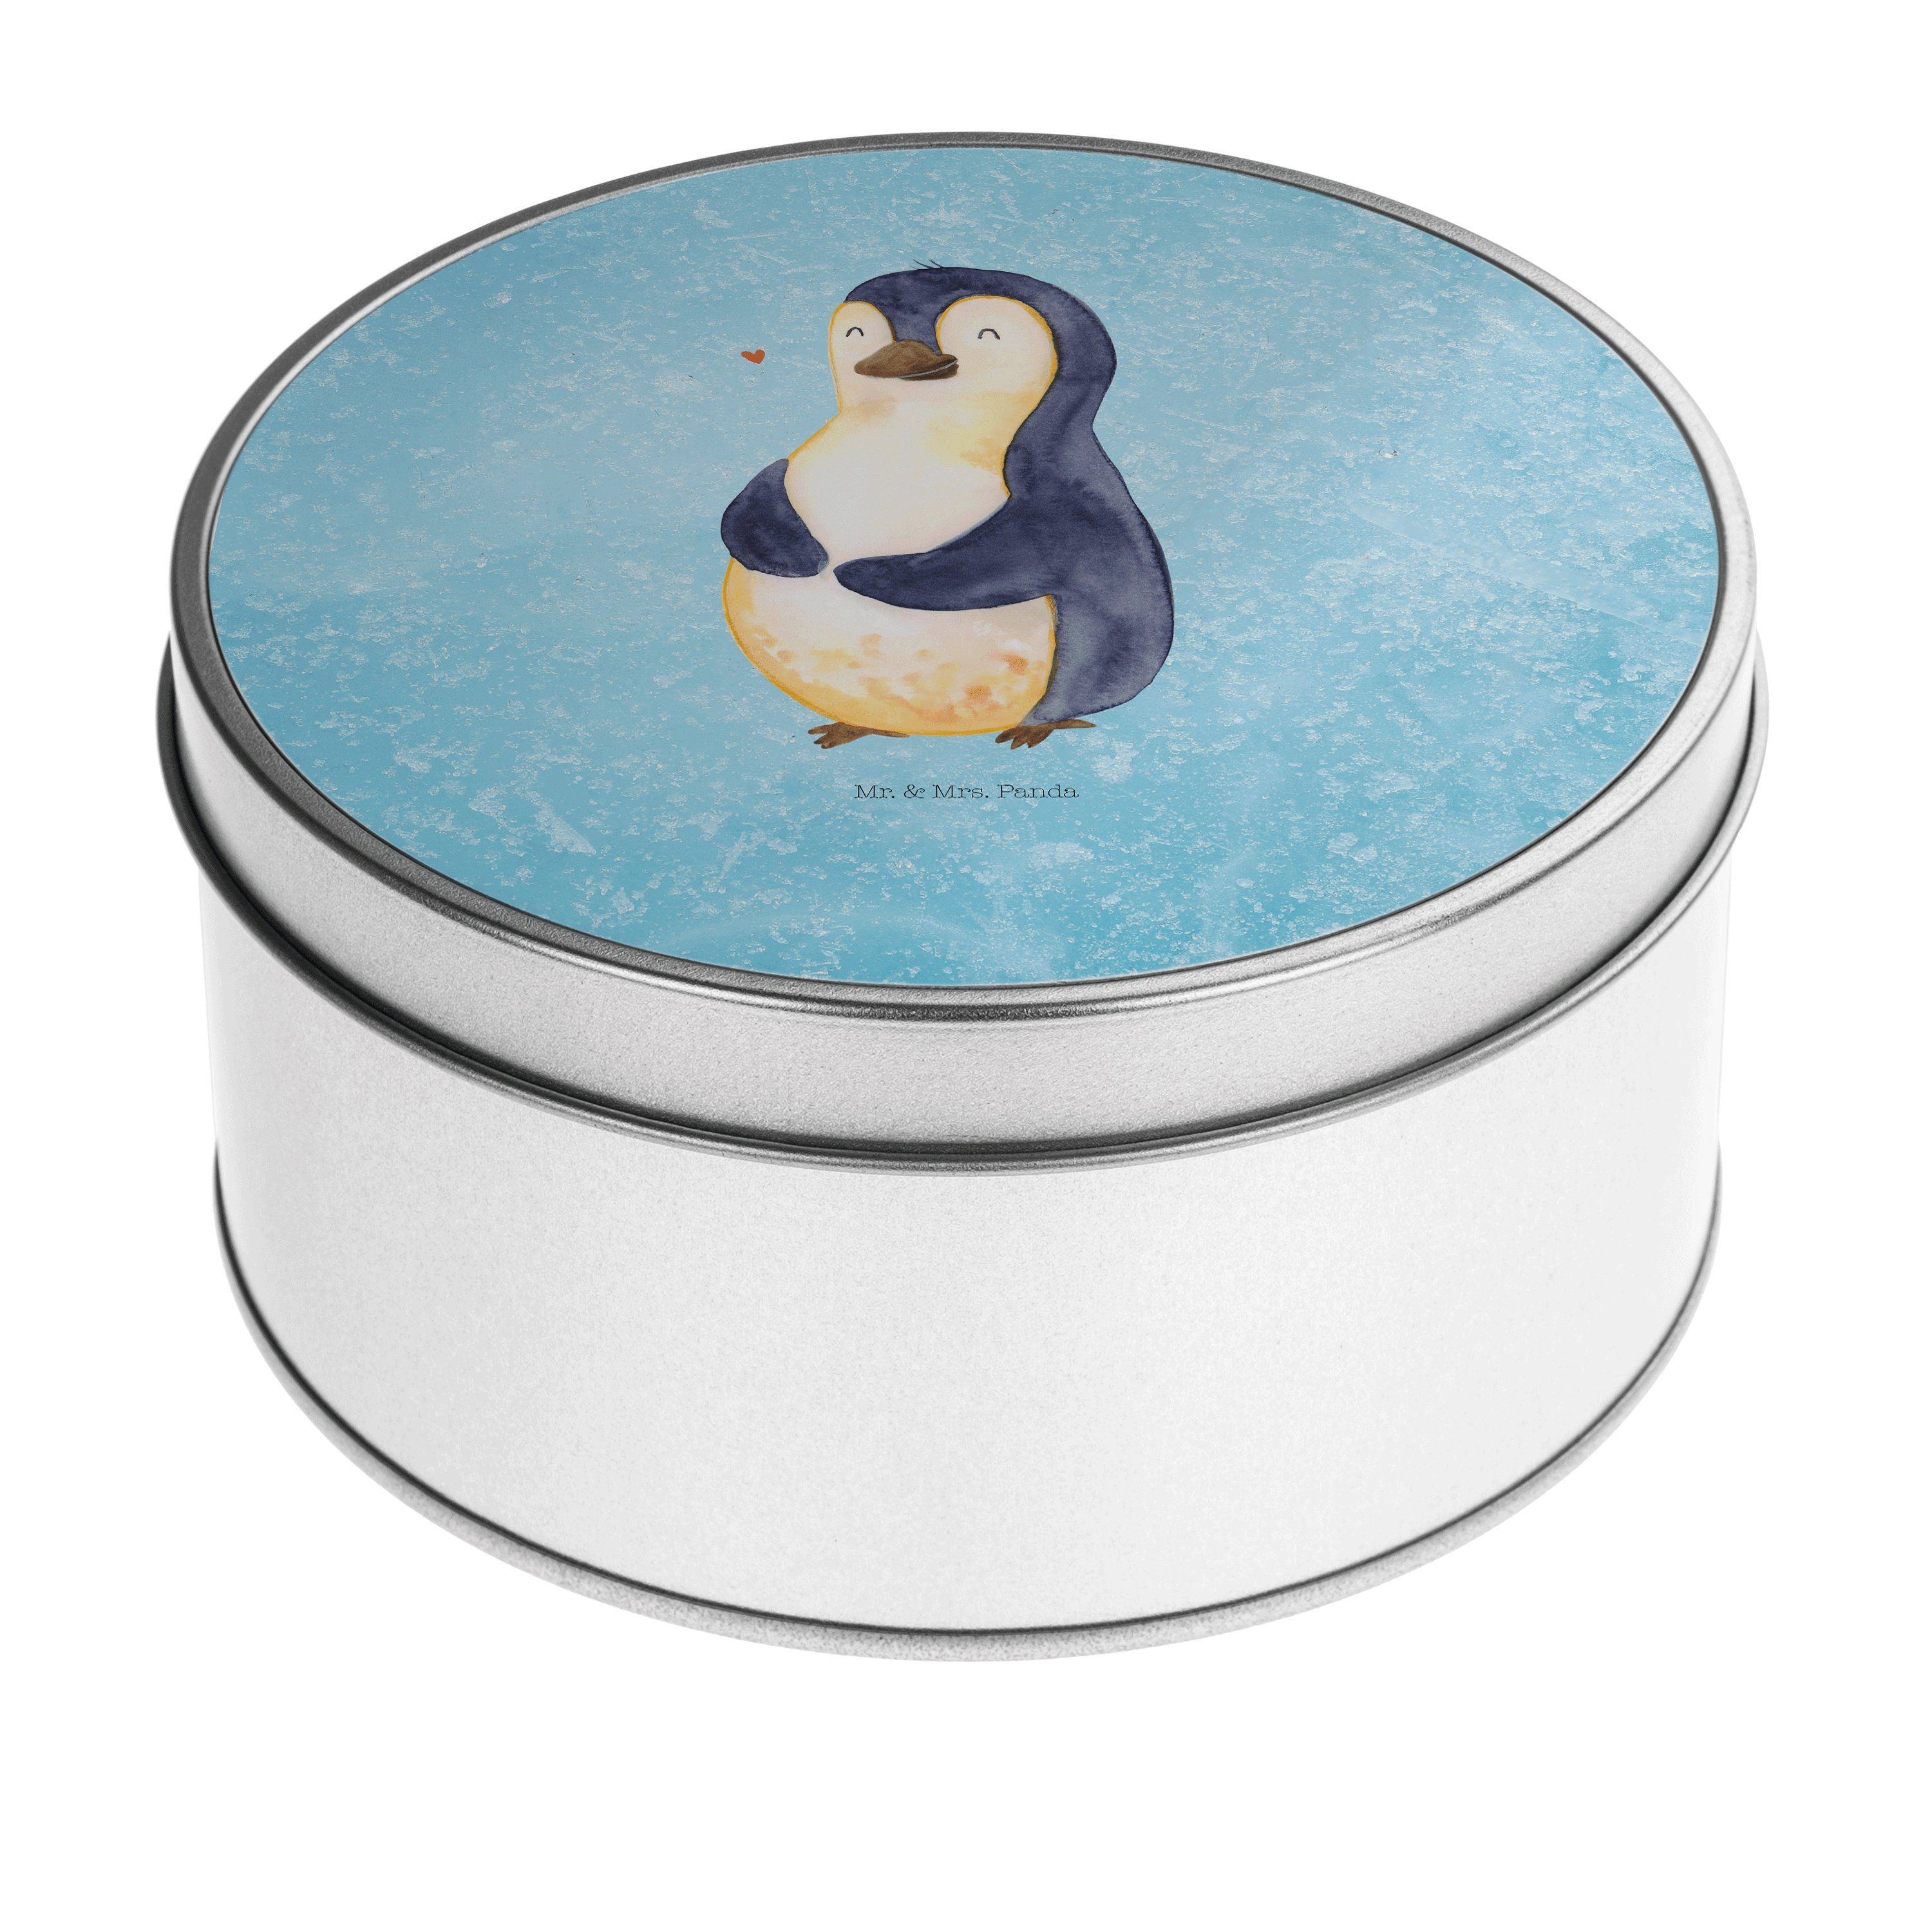 Mr. & Mrs. Panda Aufbewahrungsdose Pinguin Diät - Eisblau - Geschenk, Dose, Pinguine, Geschenkbox, Metal (1 St), Besonders glänzend